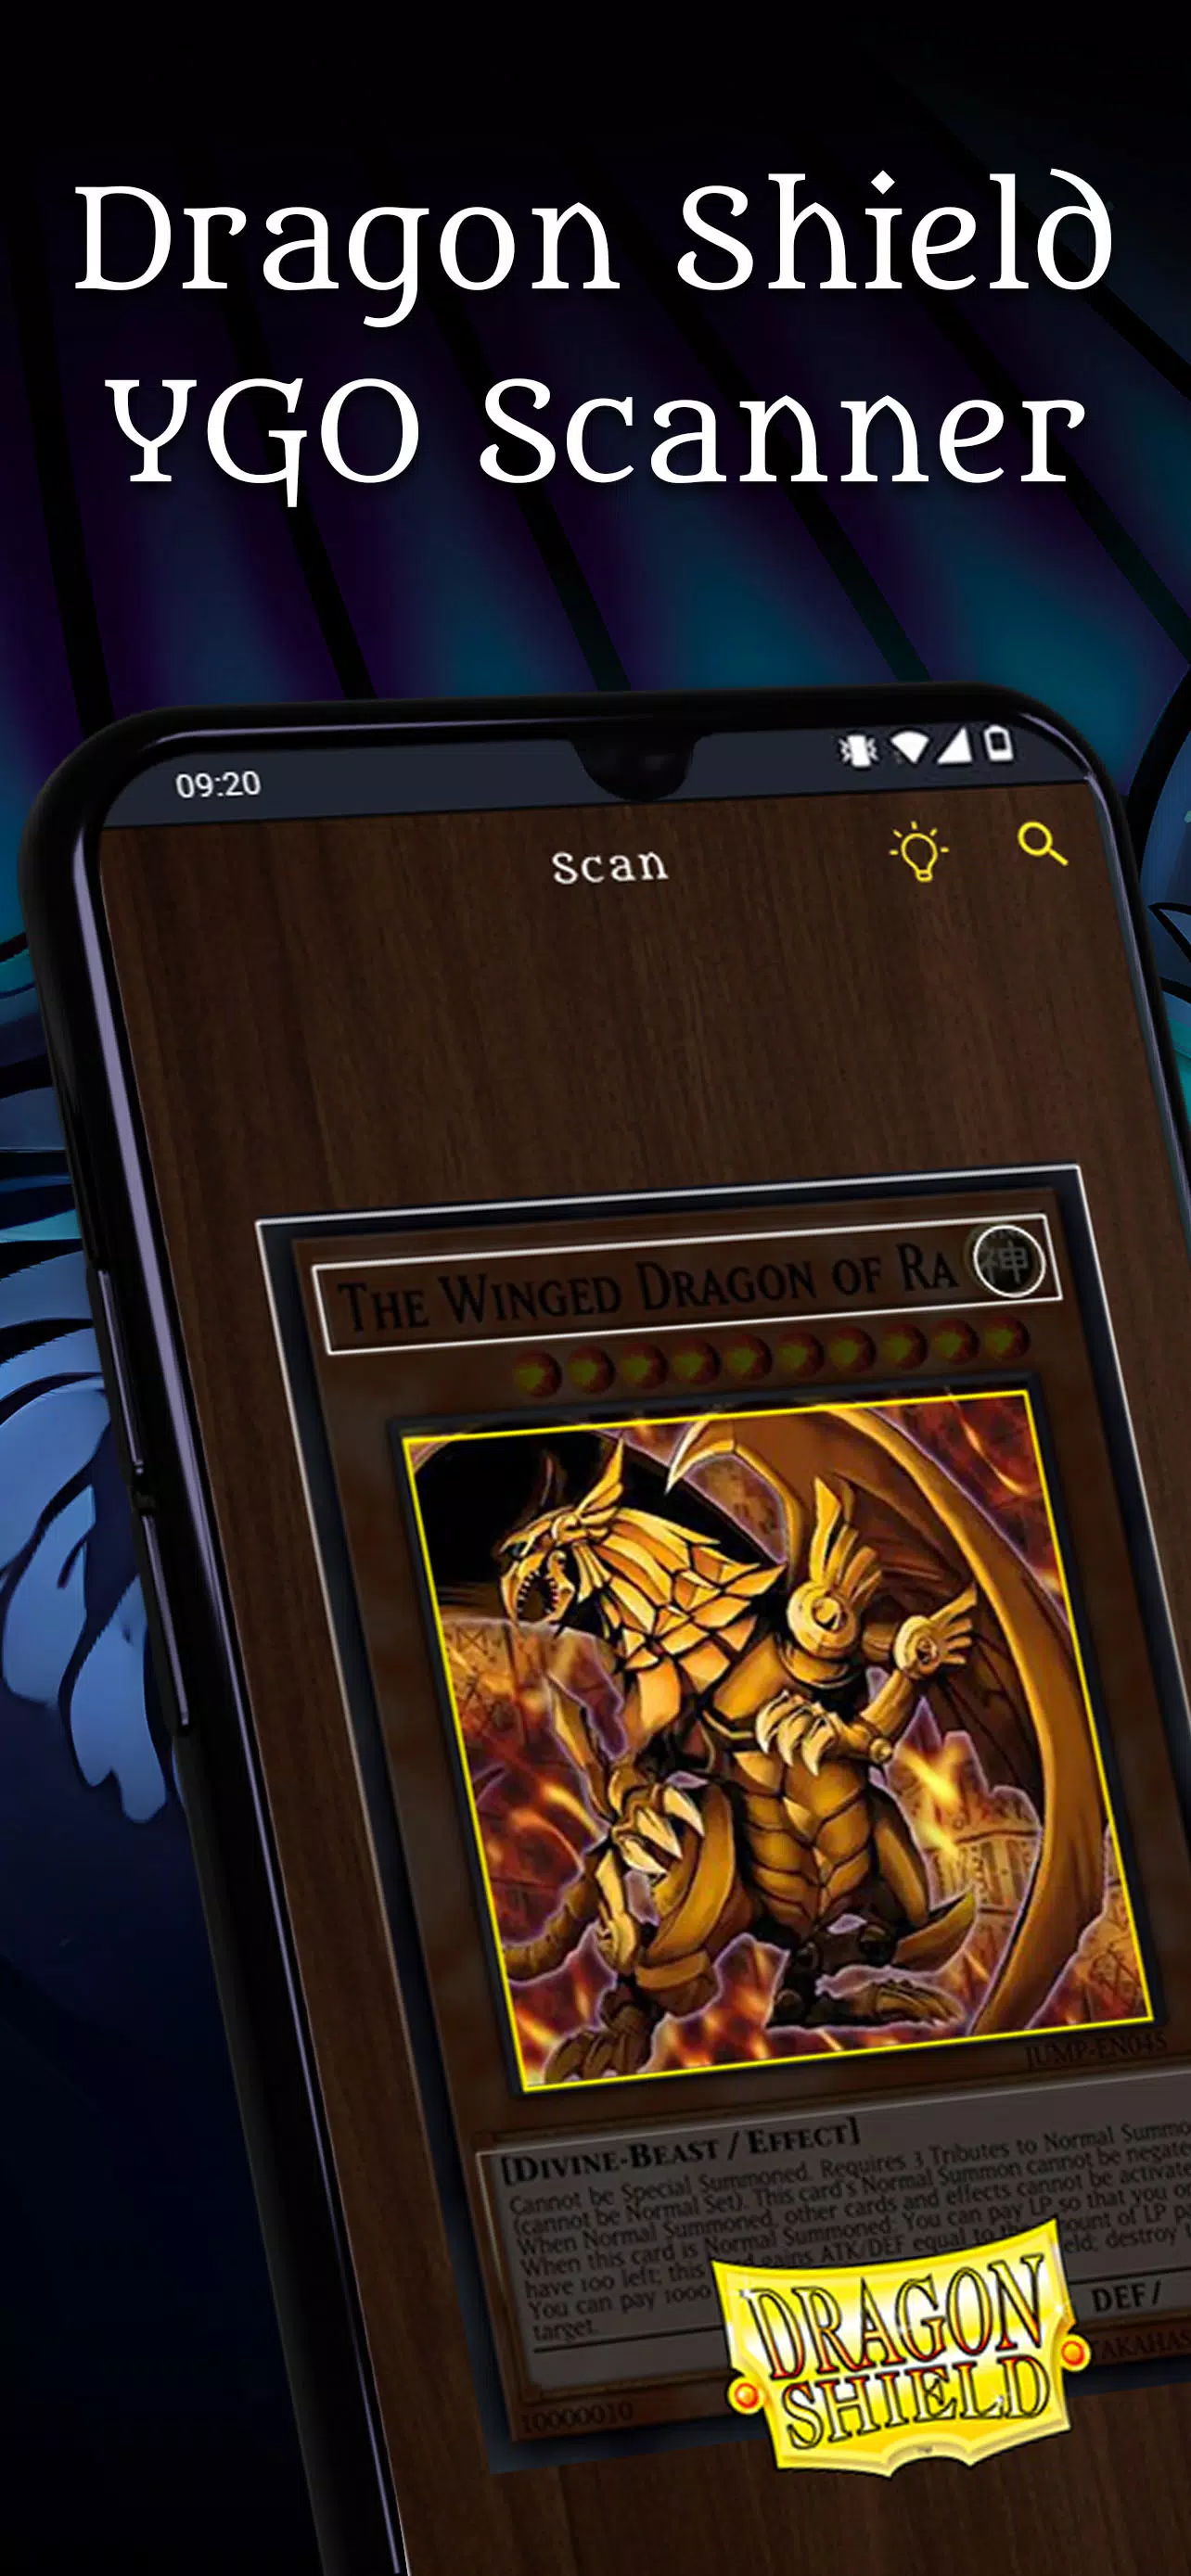 Como baixar Yu-Gi-Oh! Master Duel no celular Android e iPhone (iOS)